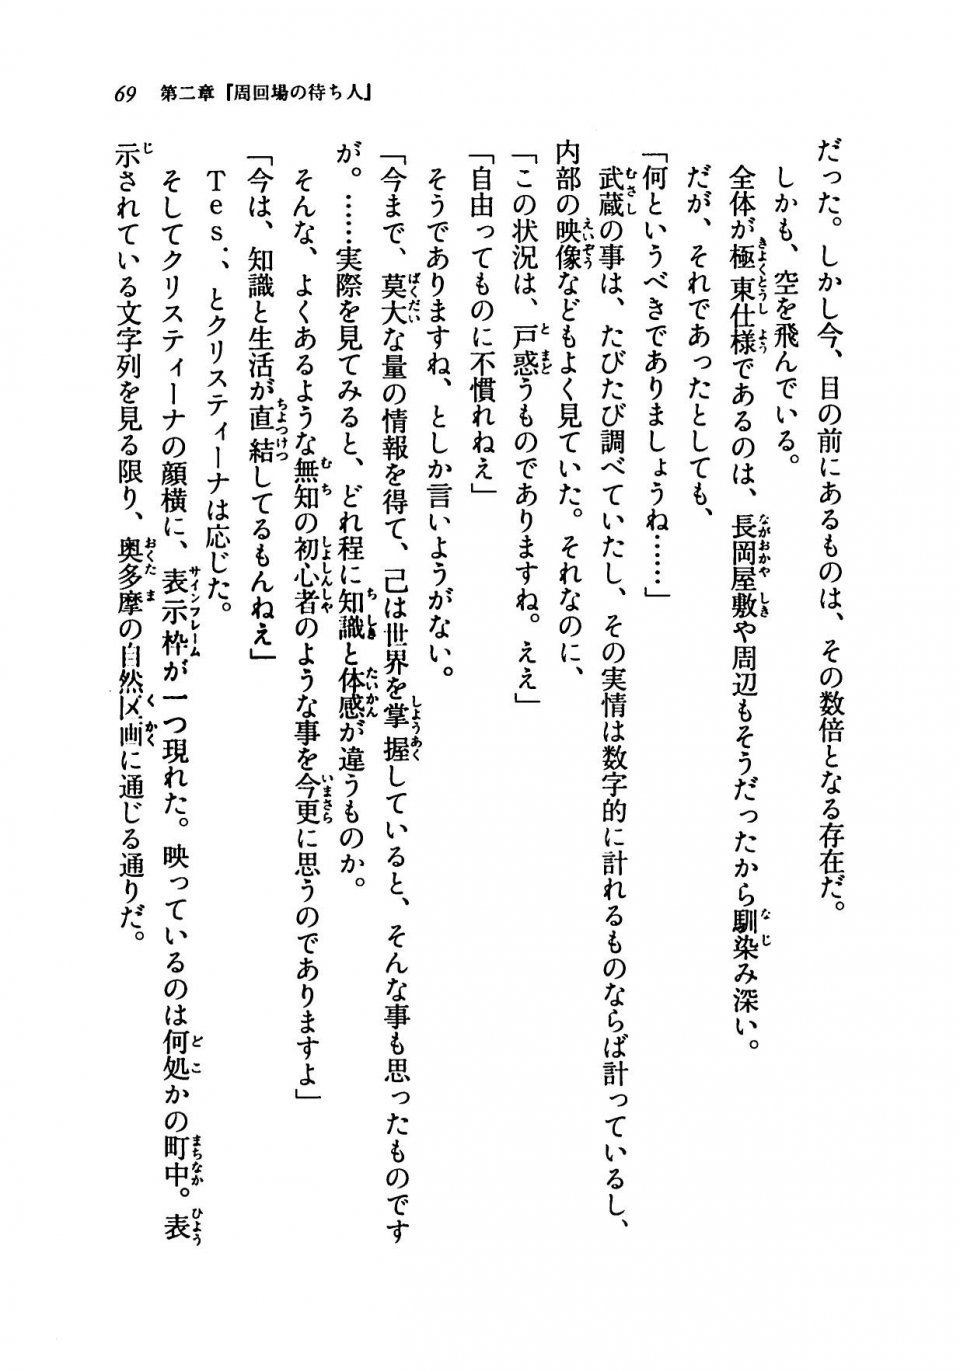 Kyoukai Senjou no Horizon LN Vol 19(8A) - Photo #69